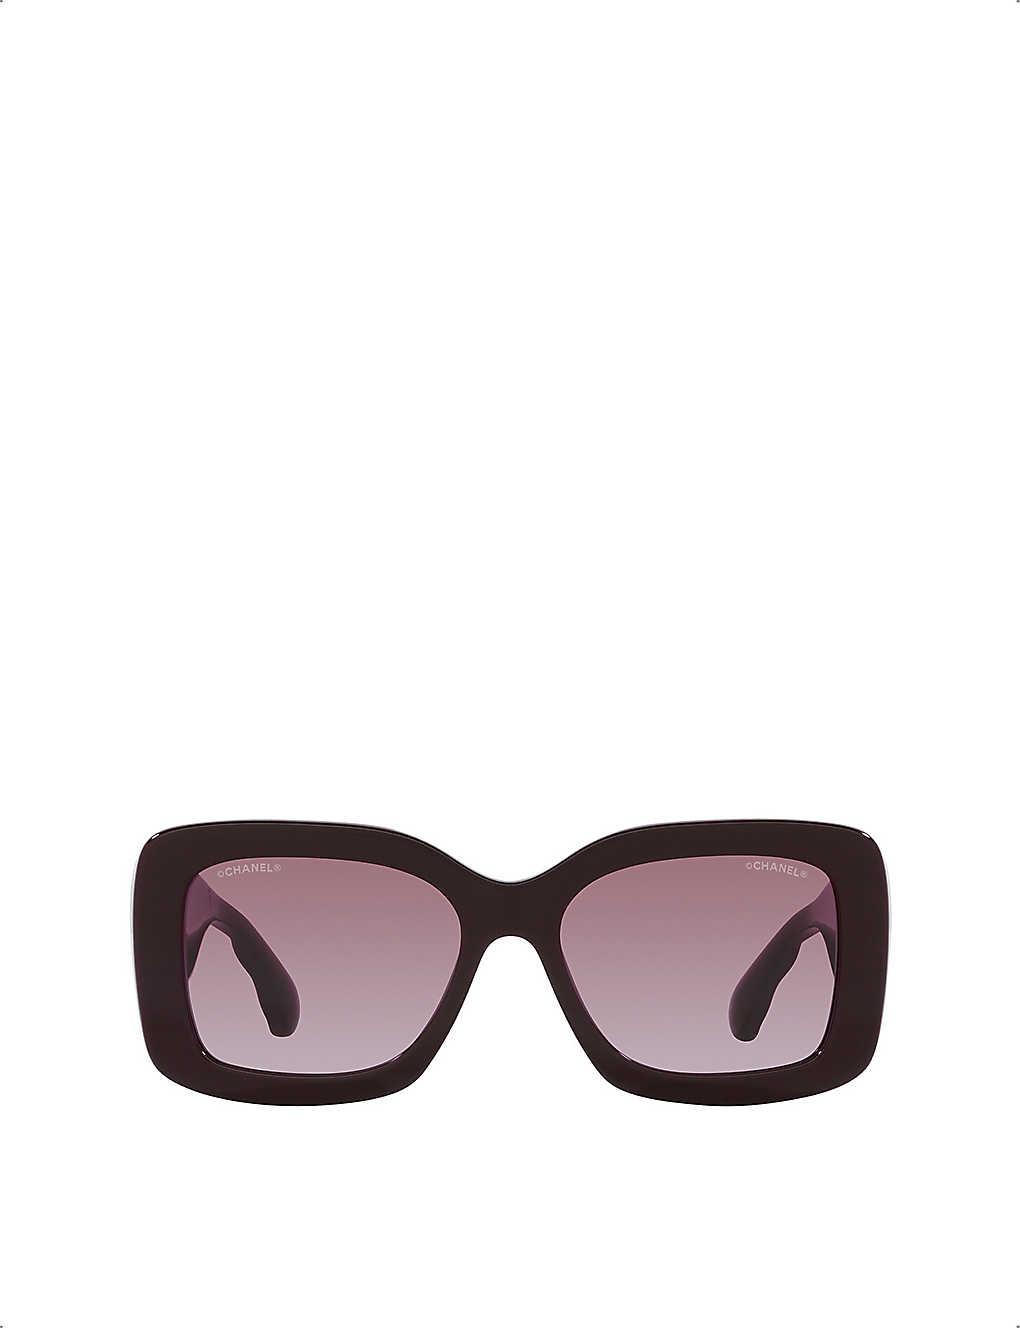 Chanel Rectangle Sunglasses in Purple